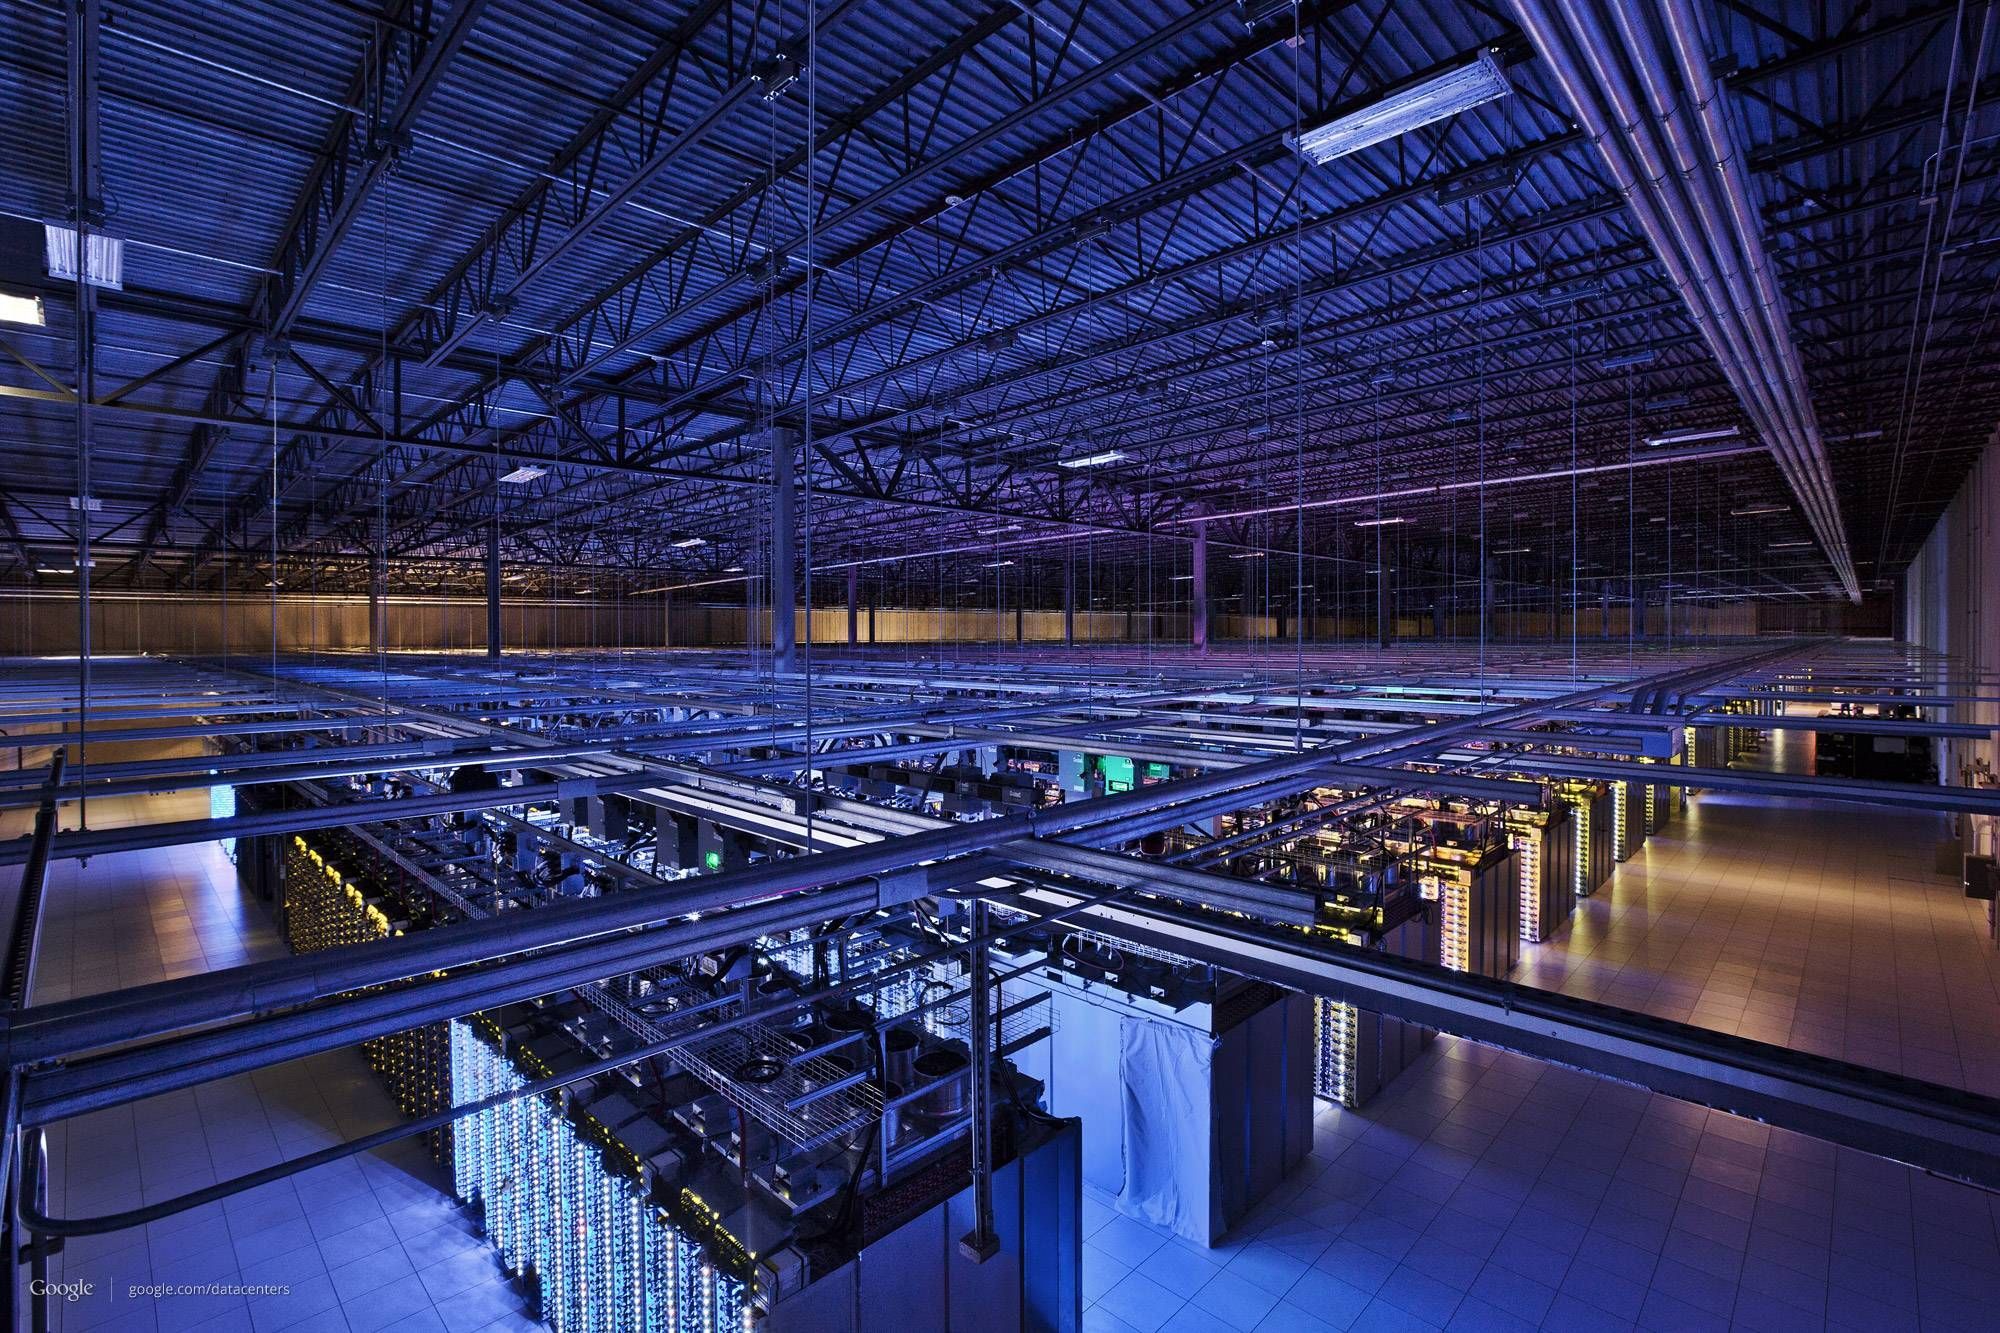 Google Datacenter Wallpaper. Data center, Server room, Big data